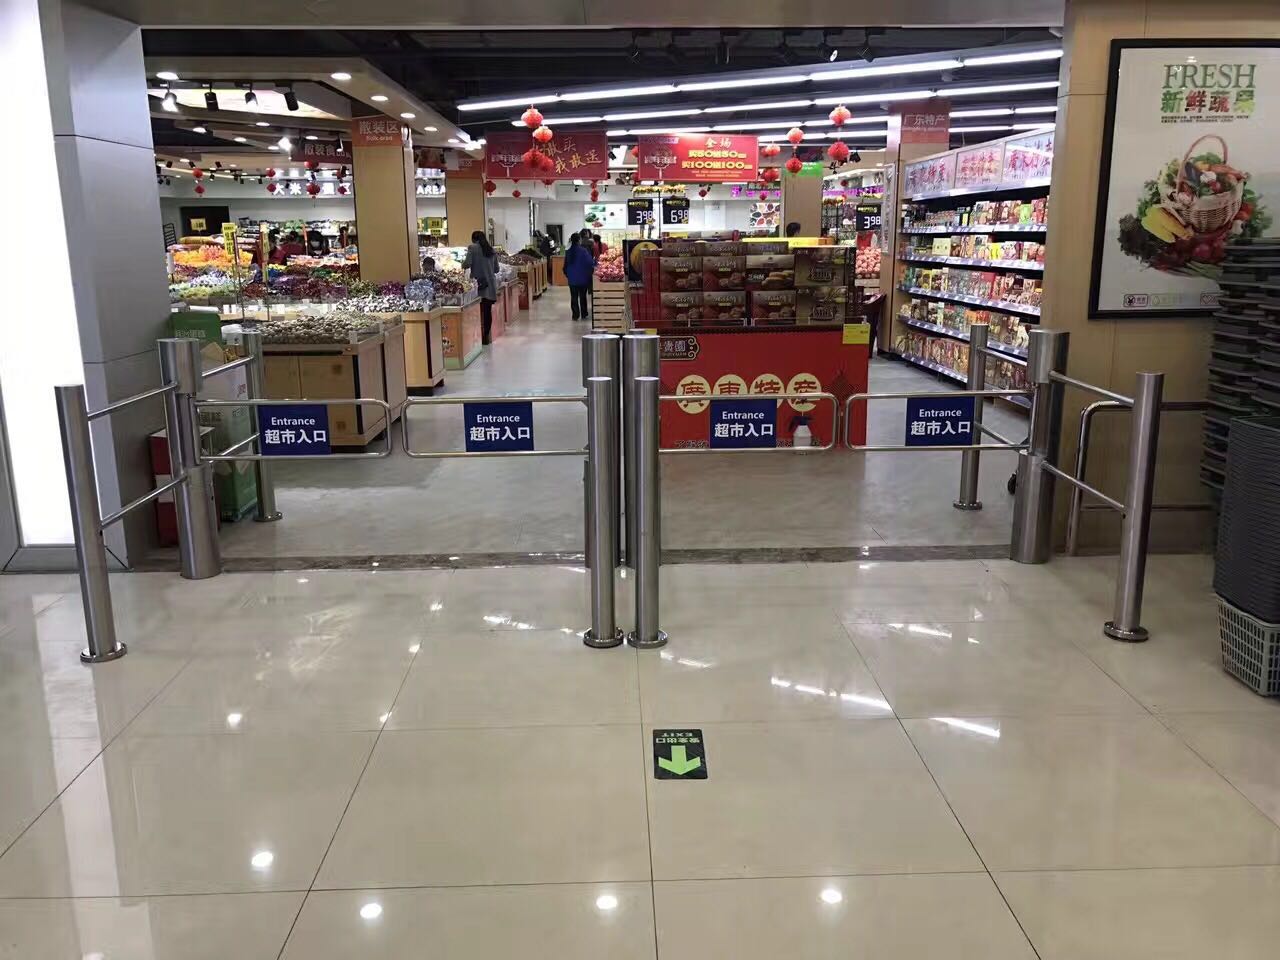 双红外超市入口感应门,雷达两柱超市感应门